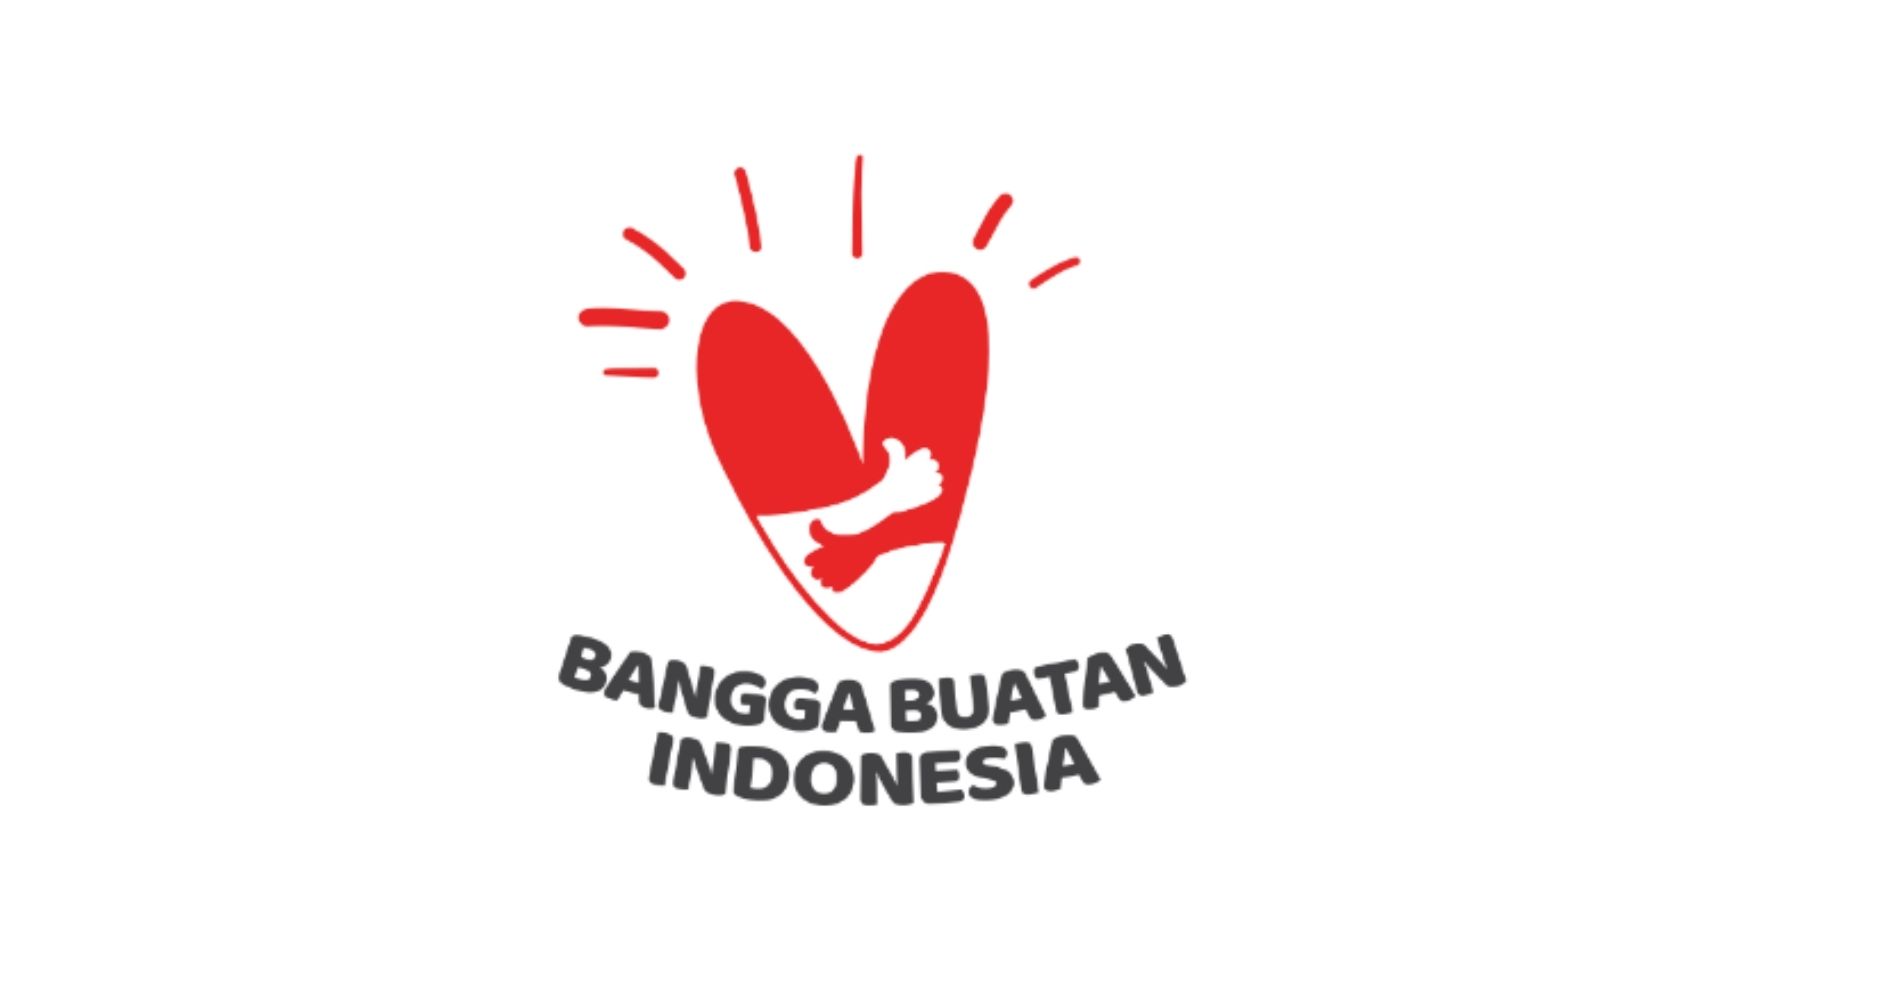 Bangga Buatan Indonesia courtesy by Arsip Kementrian Sekretariat Negara